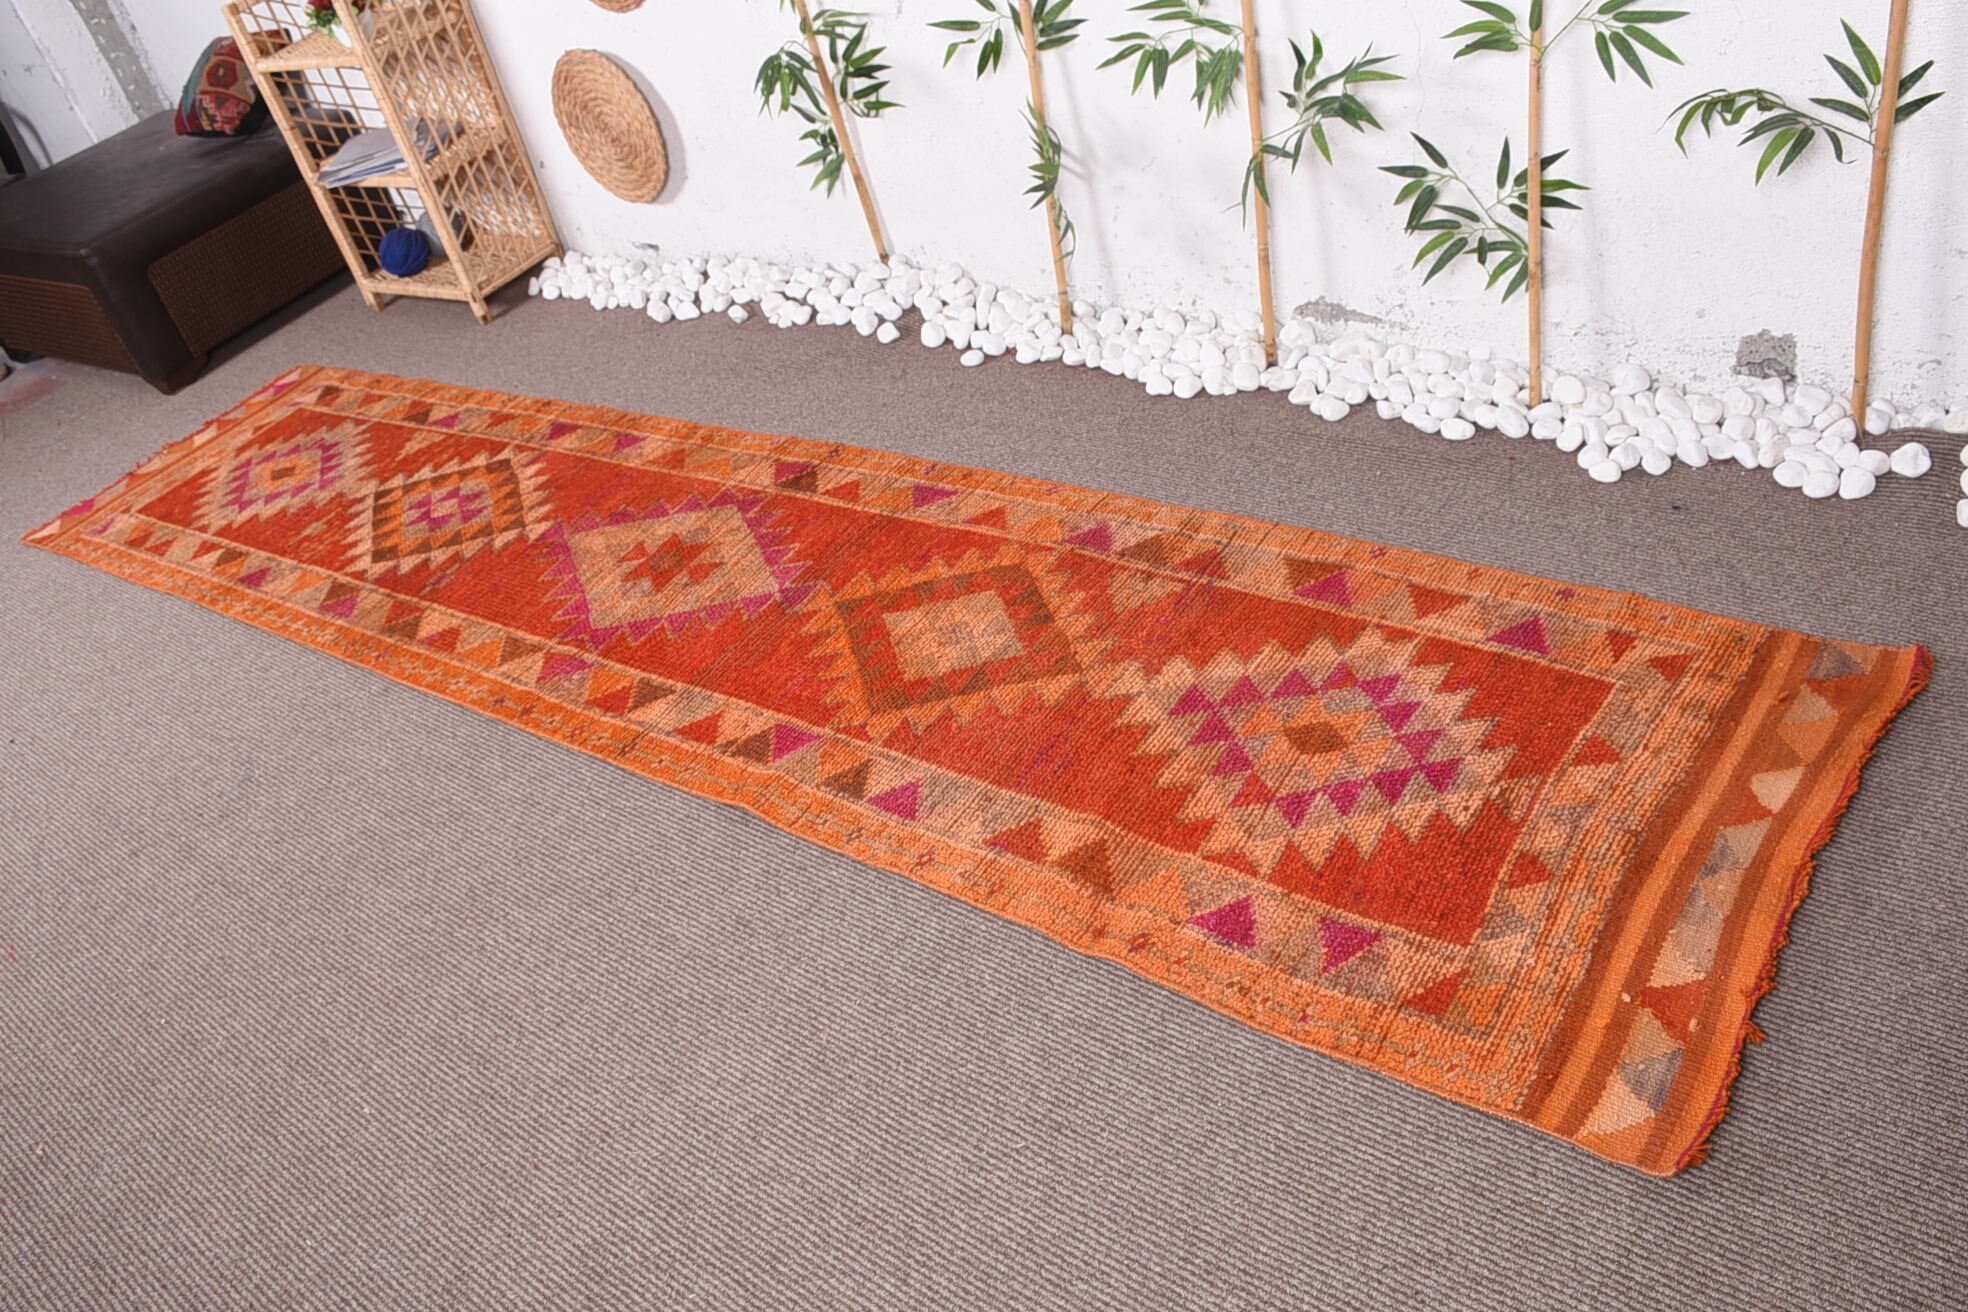 Orange Wool Rug, Floor Rug, Rugs for Hallway, Antique Rug, 2.6x11.3 ft Runner Rug, Vintage Rug, Turkish Rug, Abstract Rug, Stair Rug